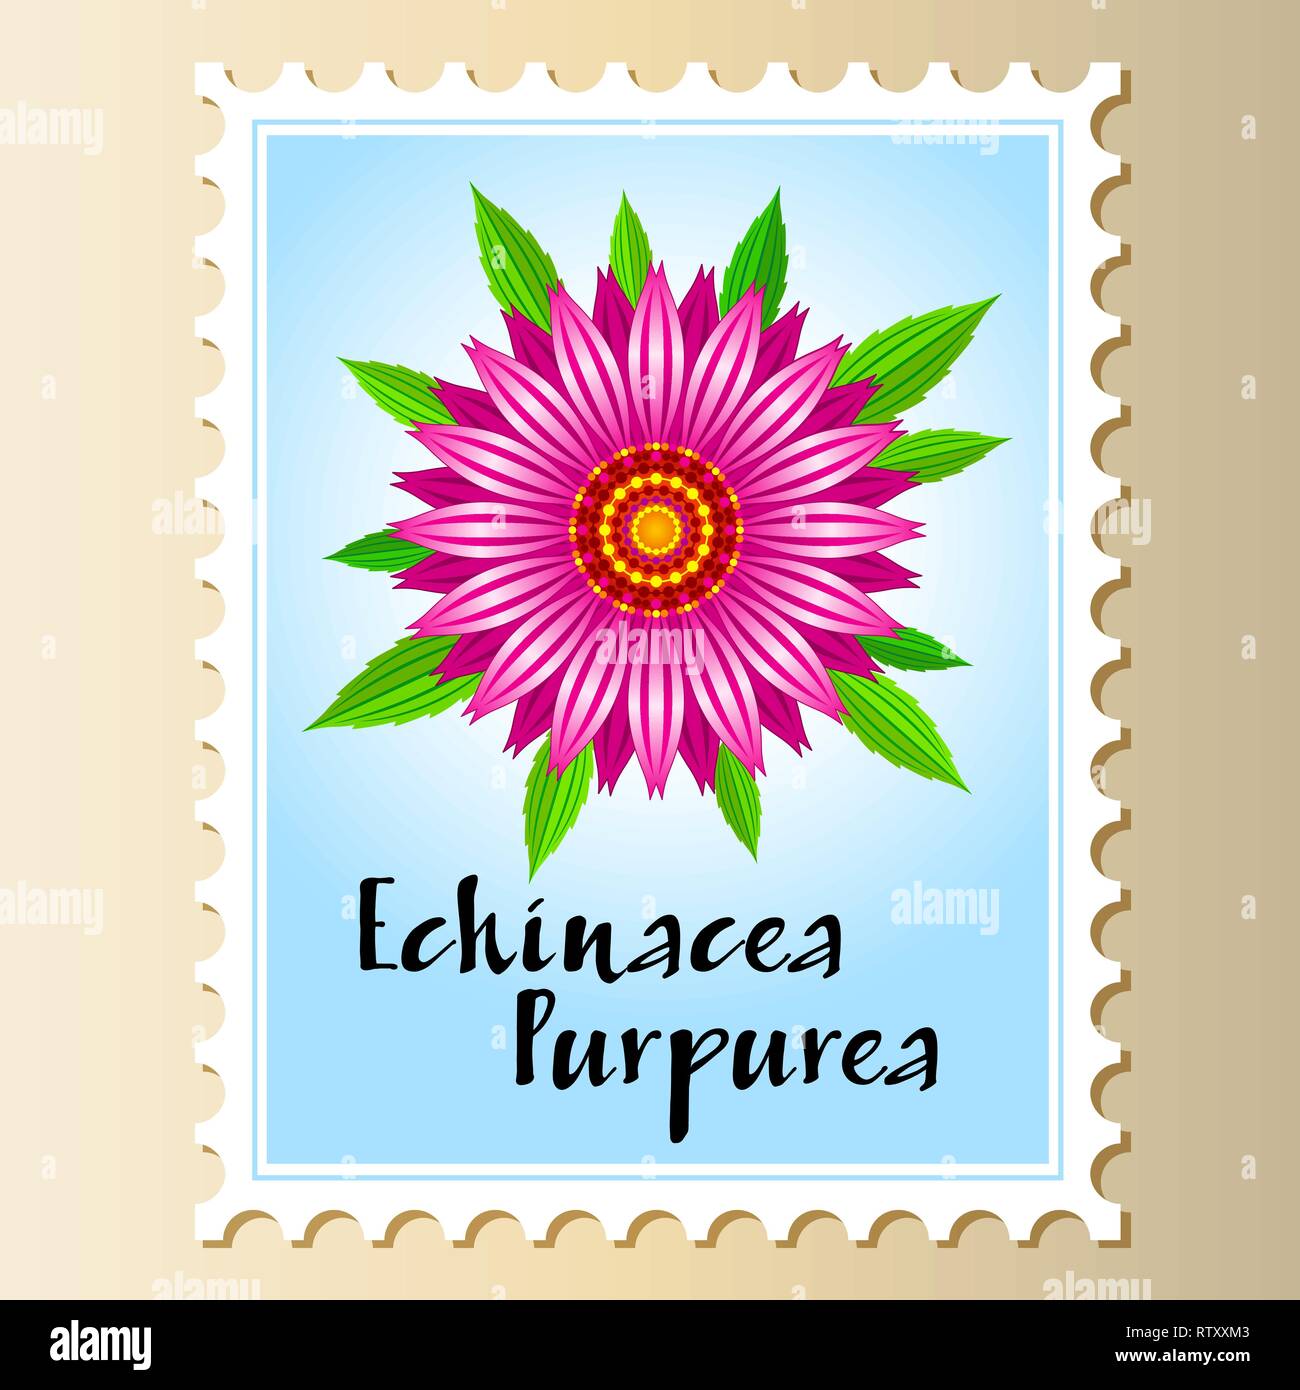 Echinacea purpurea fiore vettoriali su un francobollo. Illustrazione Vettoriale